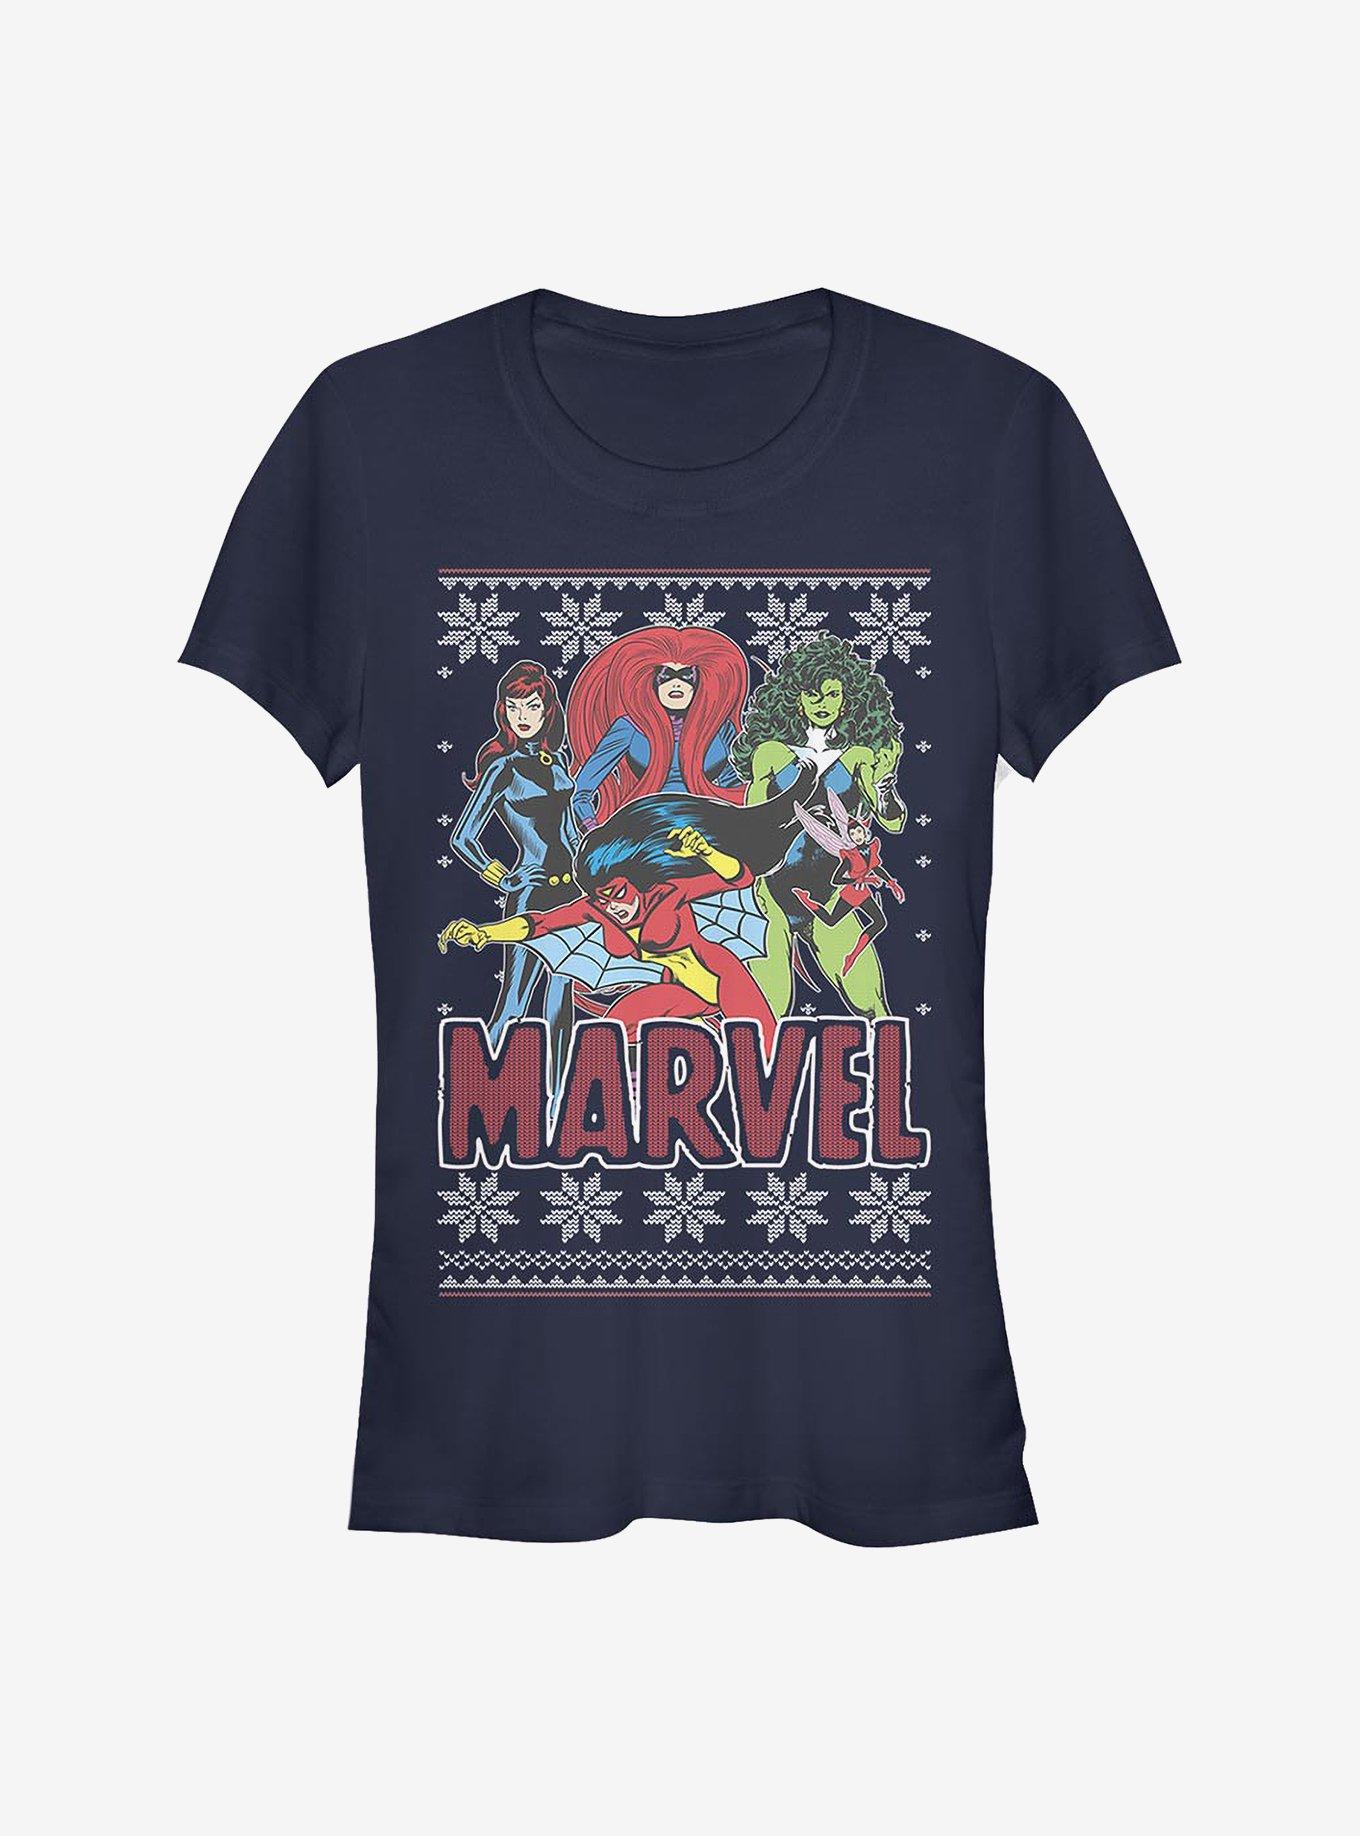 Marvel Avengers Heroines Girls T-Shirt, NAVY, hi-res